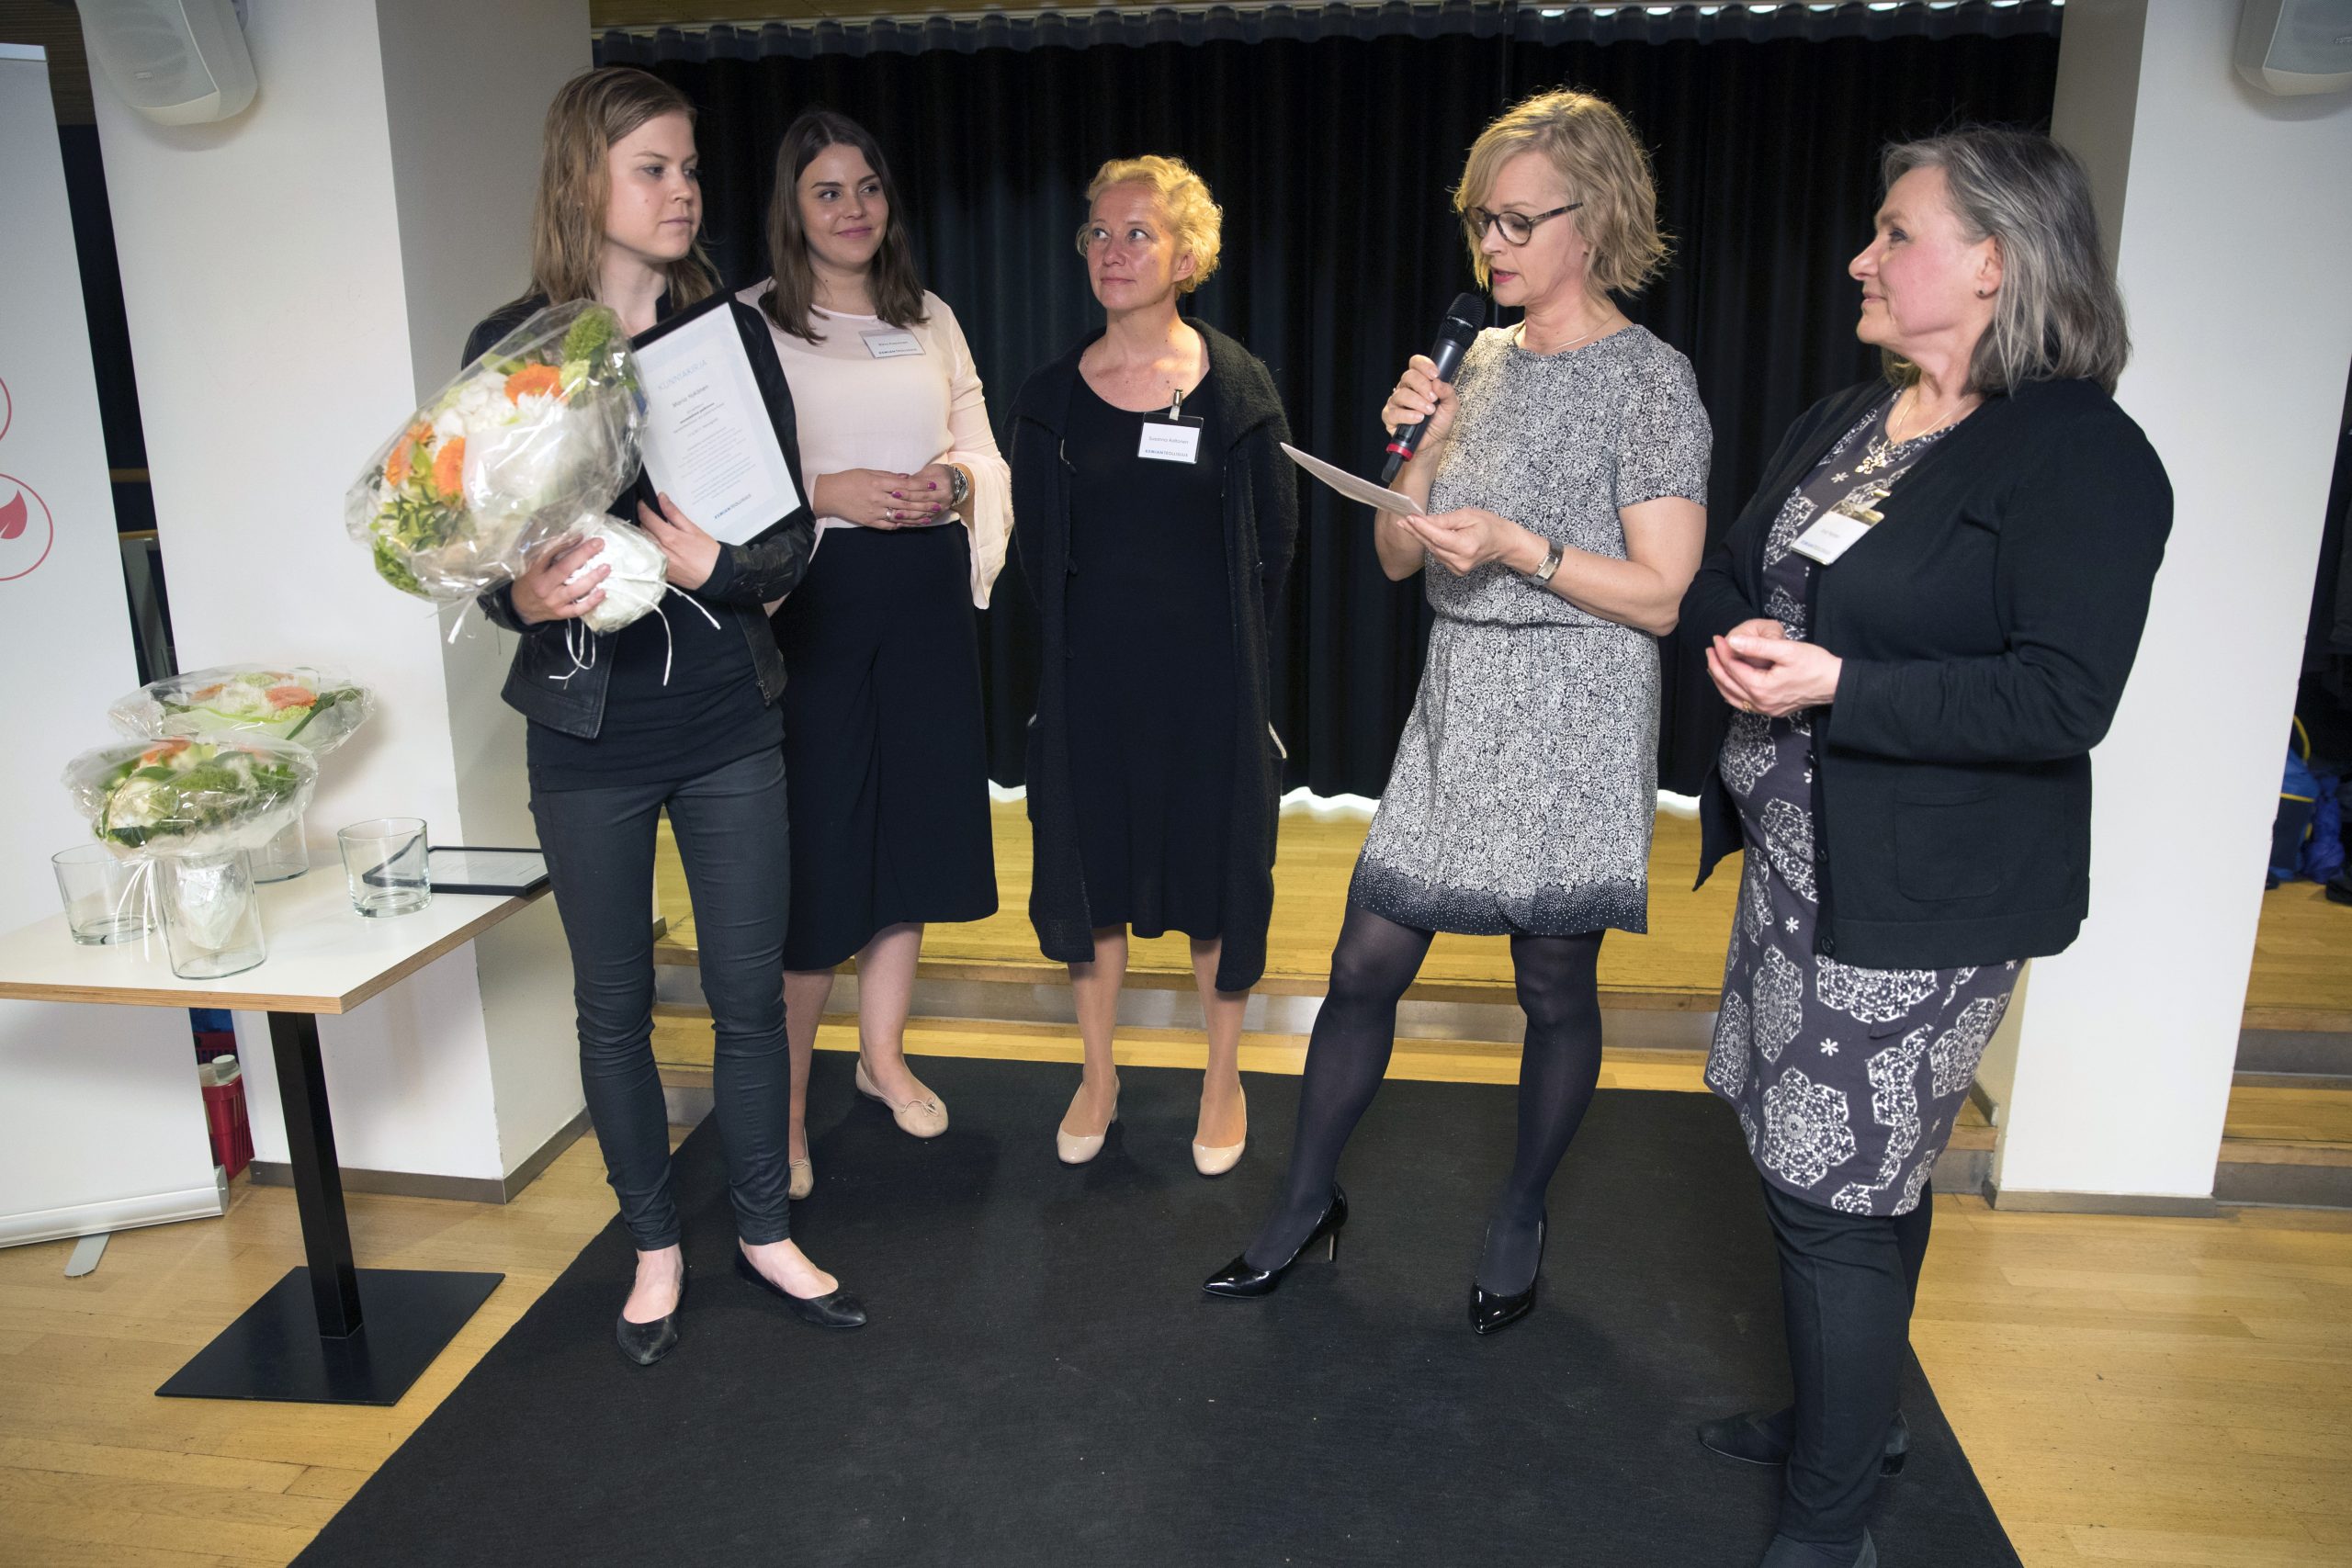 Tuomaristo palkitsemassa voittaja Maria Nykästä. Tuomaristo oikealta vasemmalle: Anja Nystén, Marjo Oikarinen, Susanna Aaltonen ja Riina Kasurinen. Maarit Jaakkola puuttuu kuvasta.